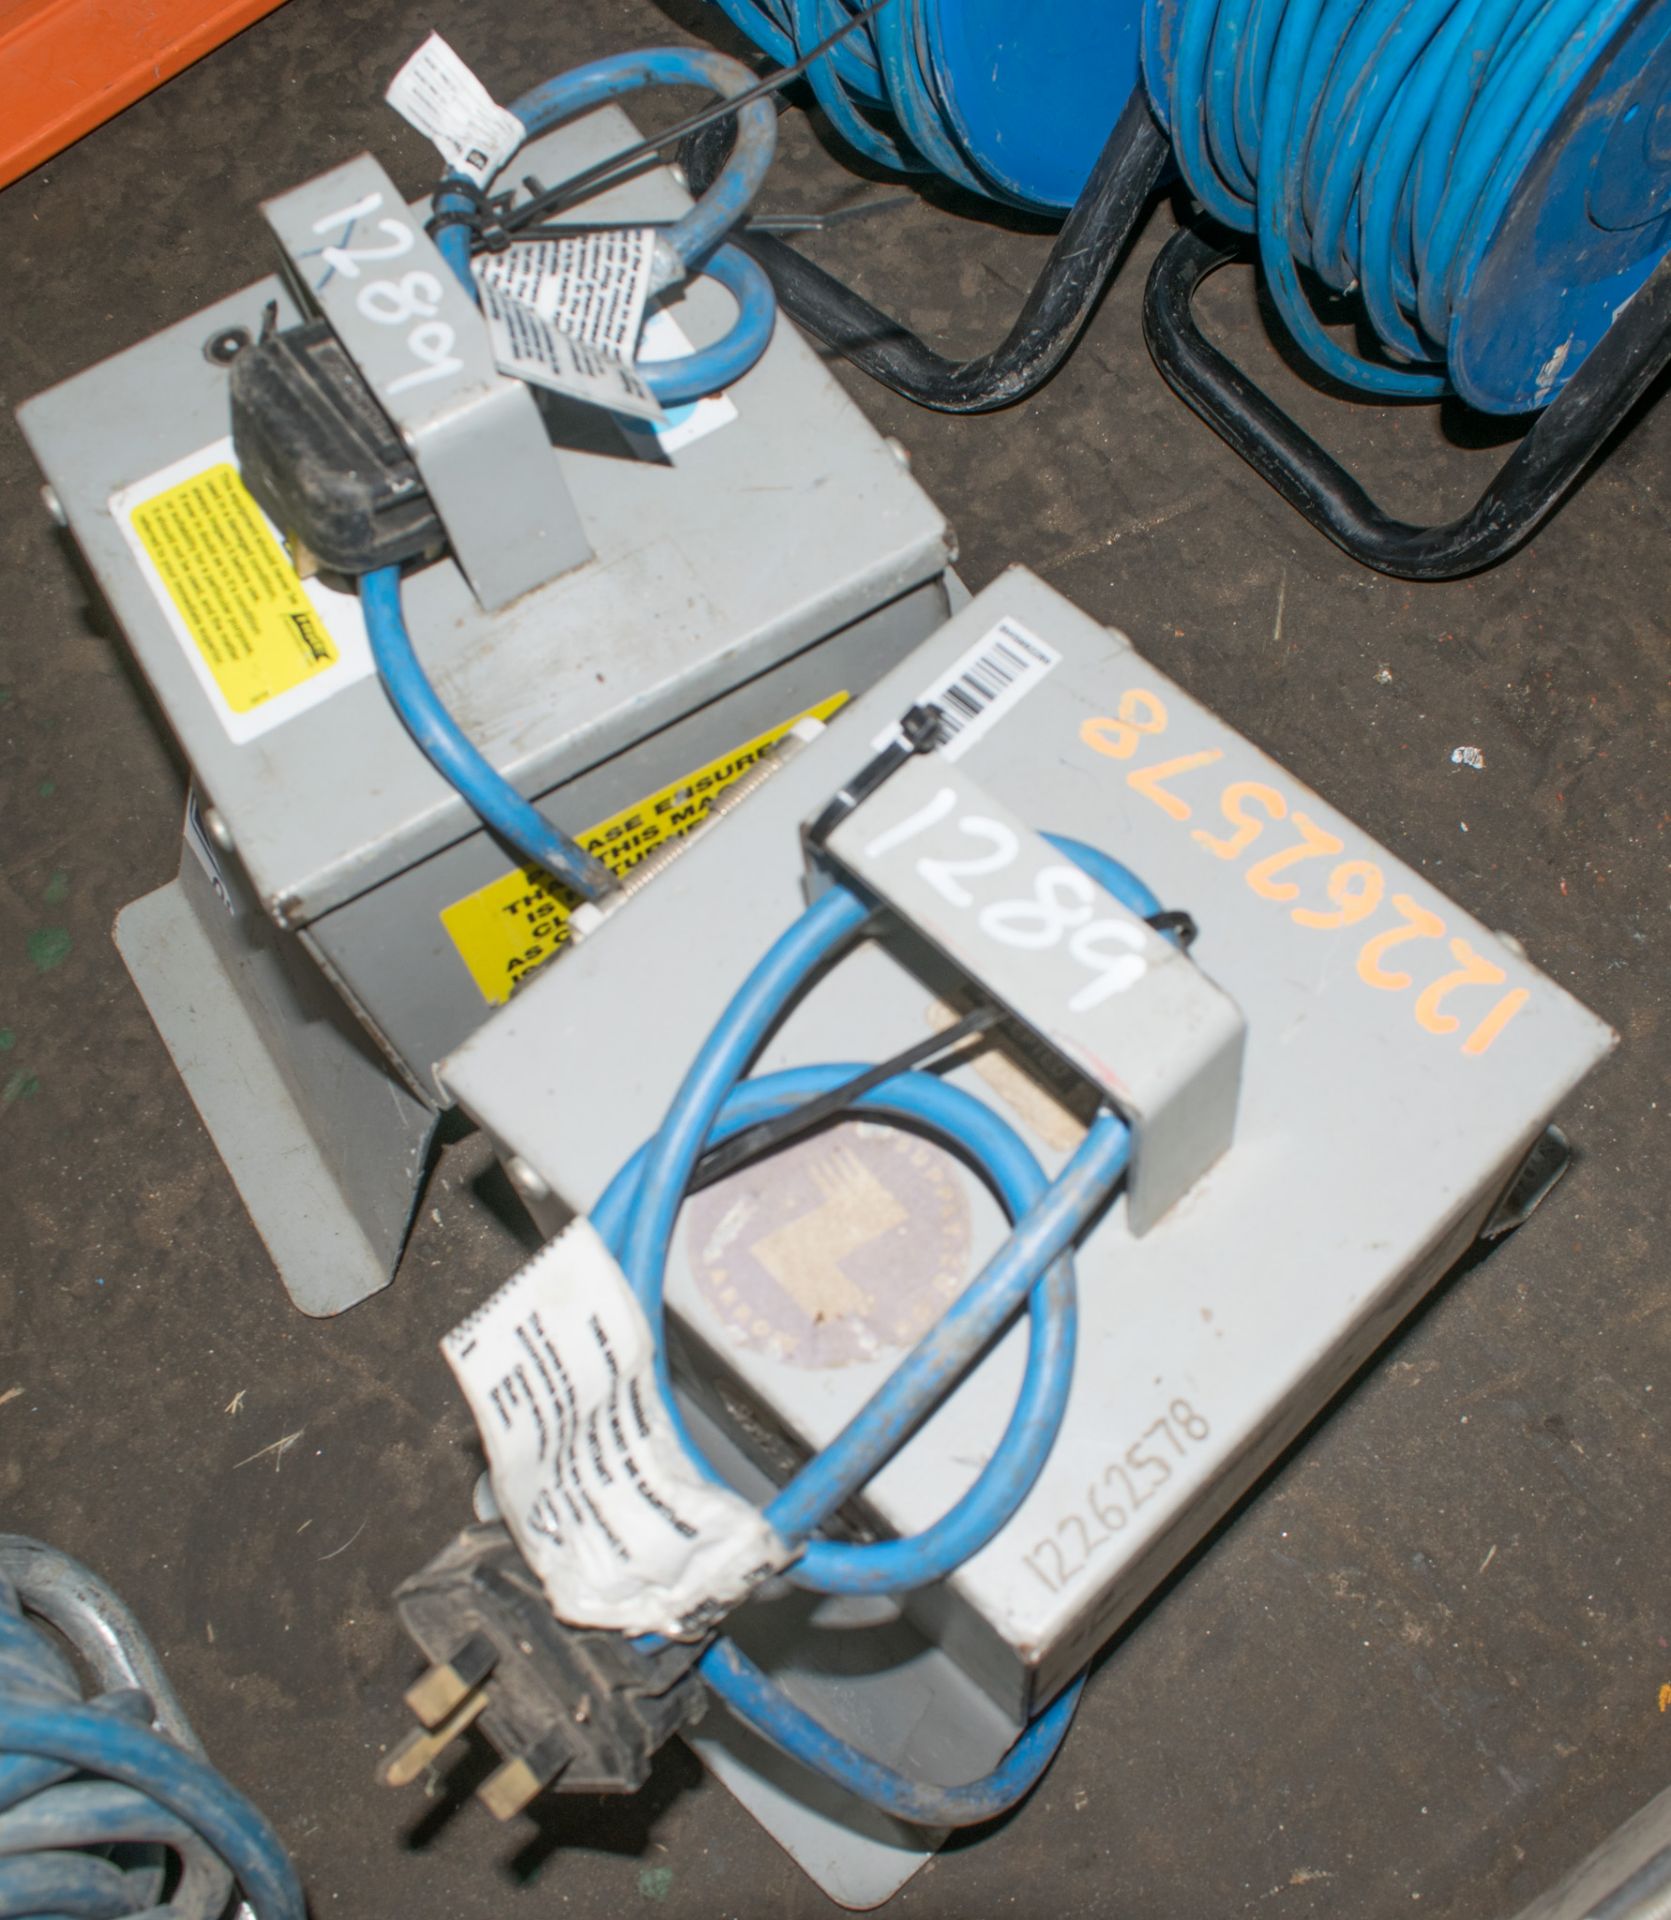 2 - 240 volt RCD distribution boxes